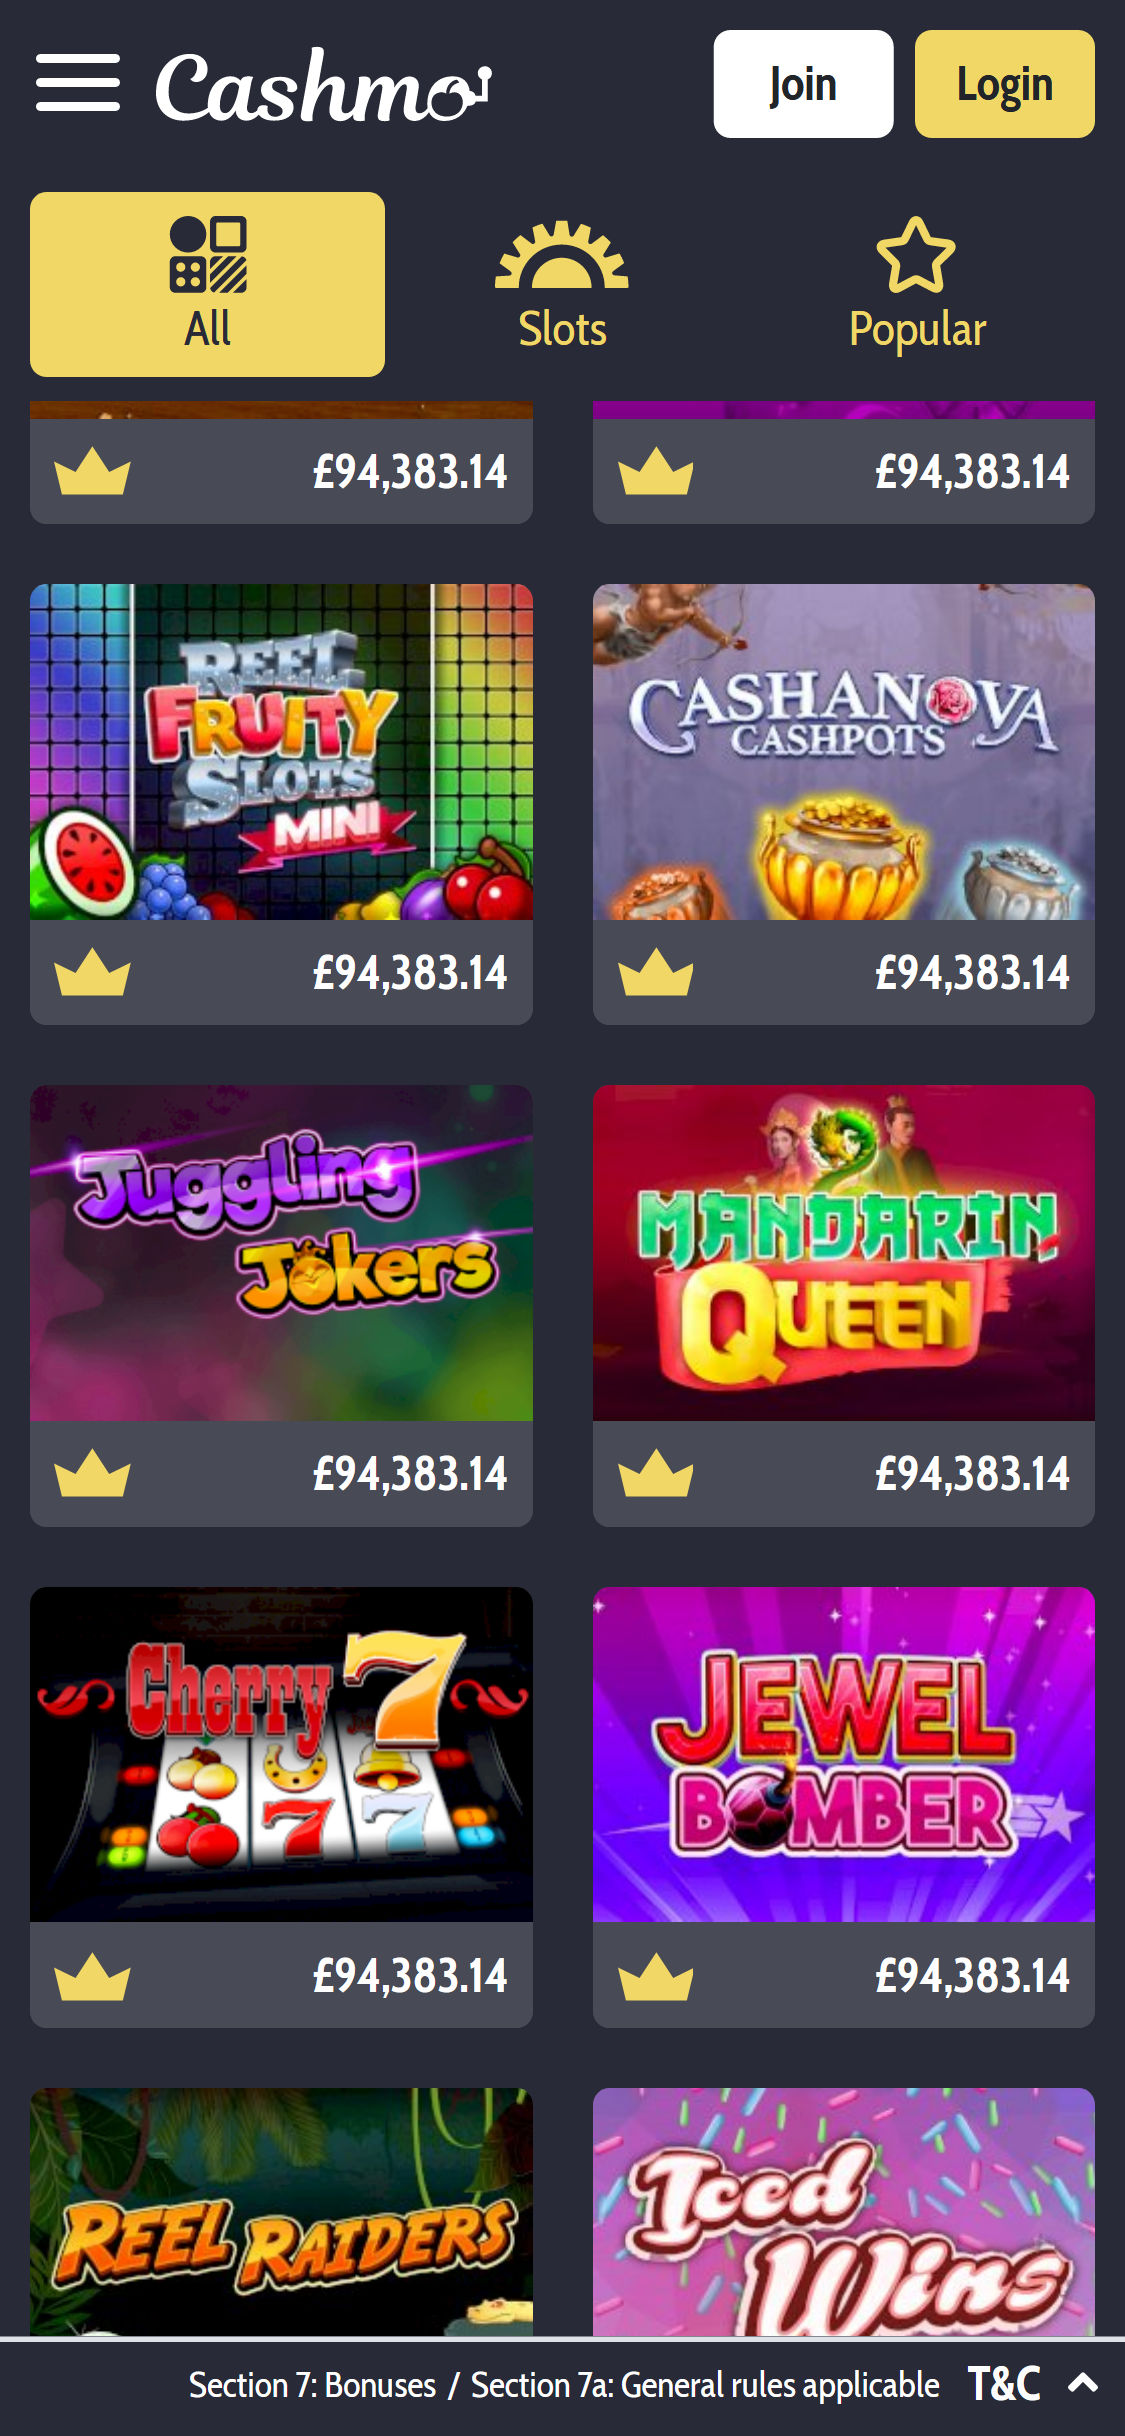 Cashmo Casino Mobile Games Review